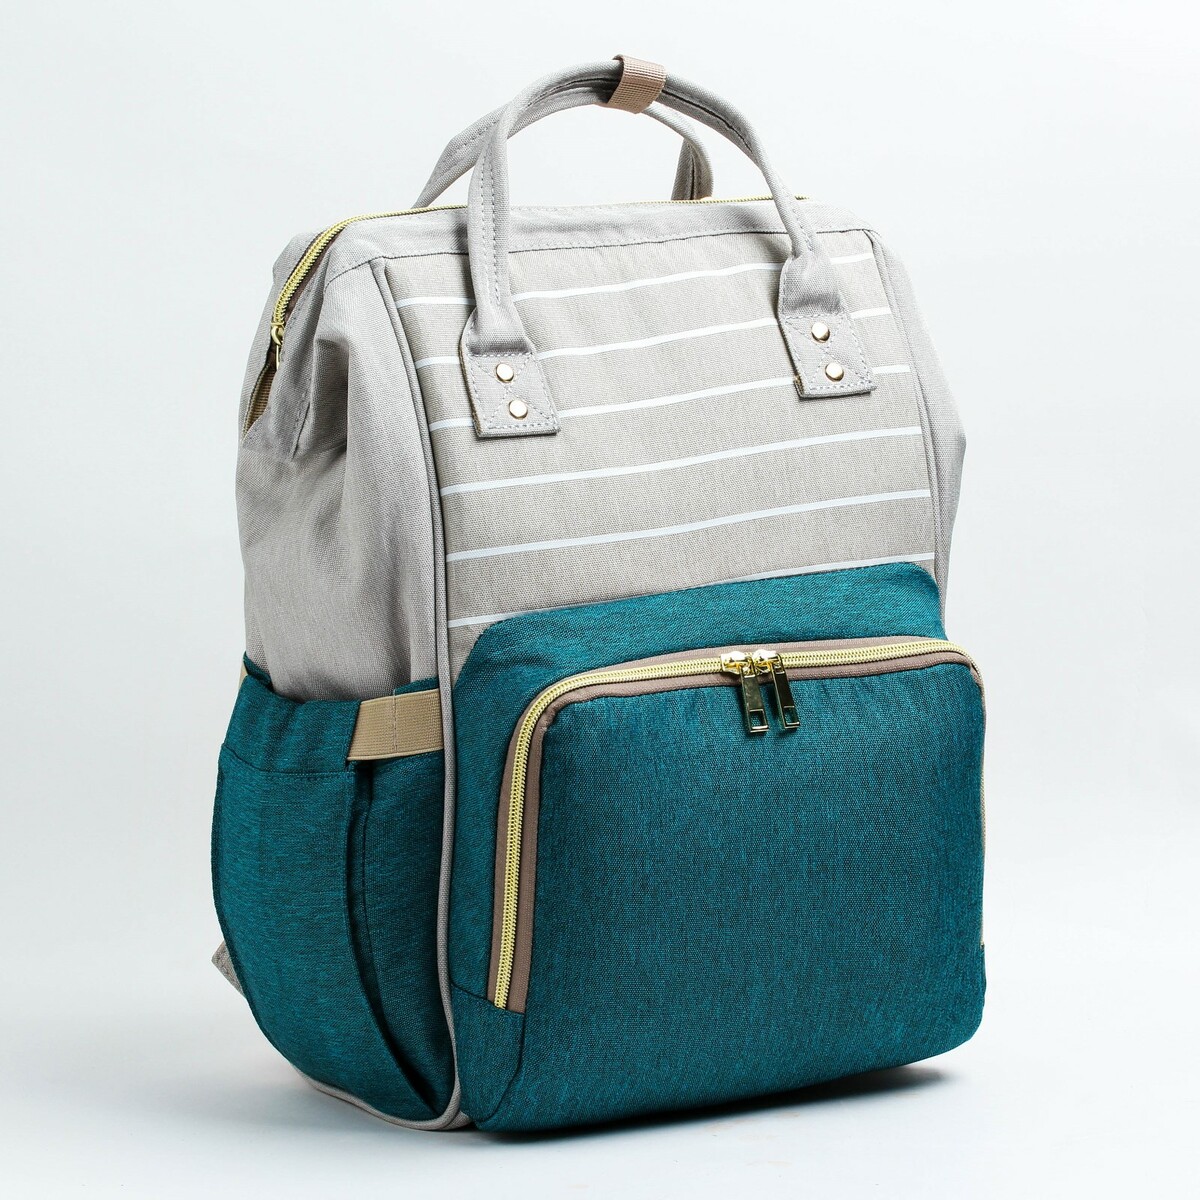 Рюкзак женский с термокарманом, термосумка - портфель, цвет серый/зеленый портфель